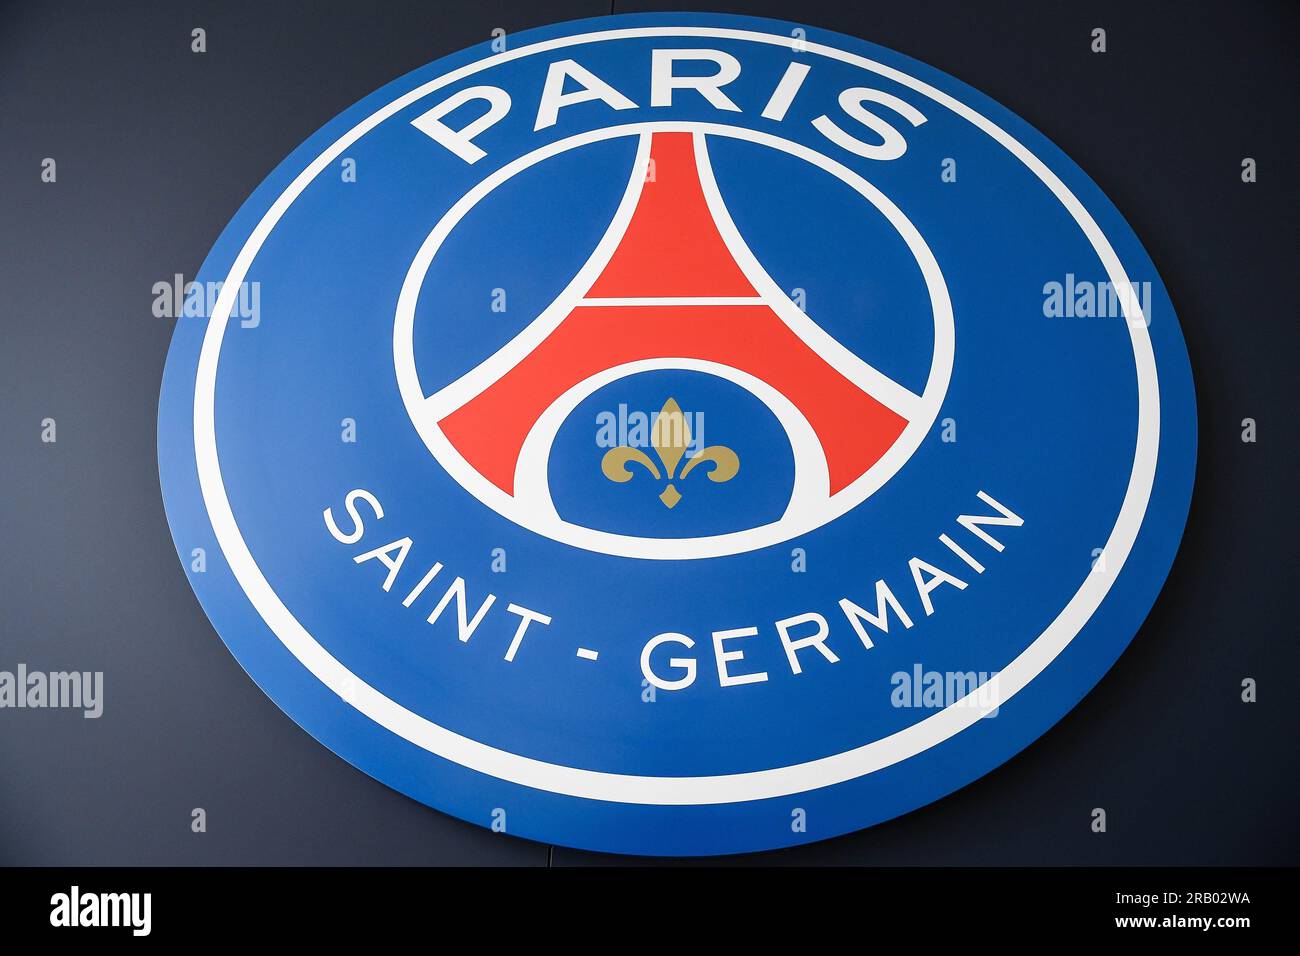 Paris Saint Germain Psg Flag Waving : vidéo de stock (100 % libre